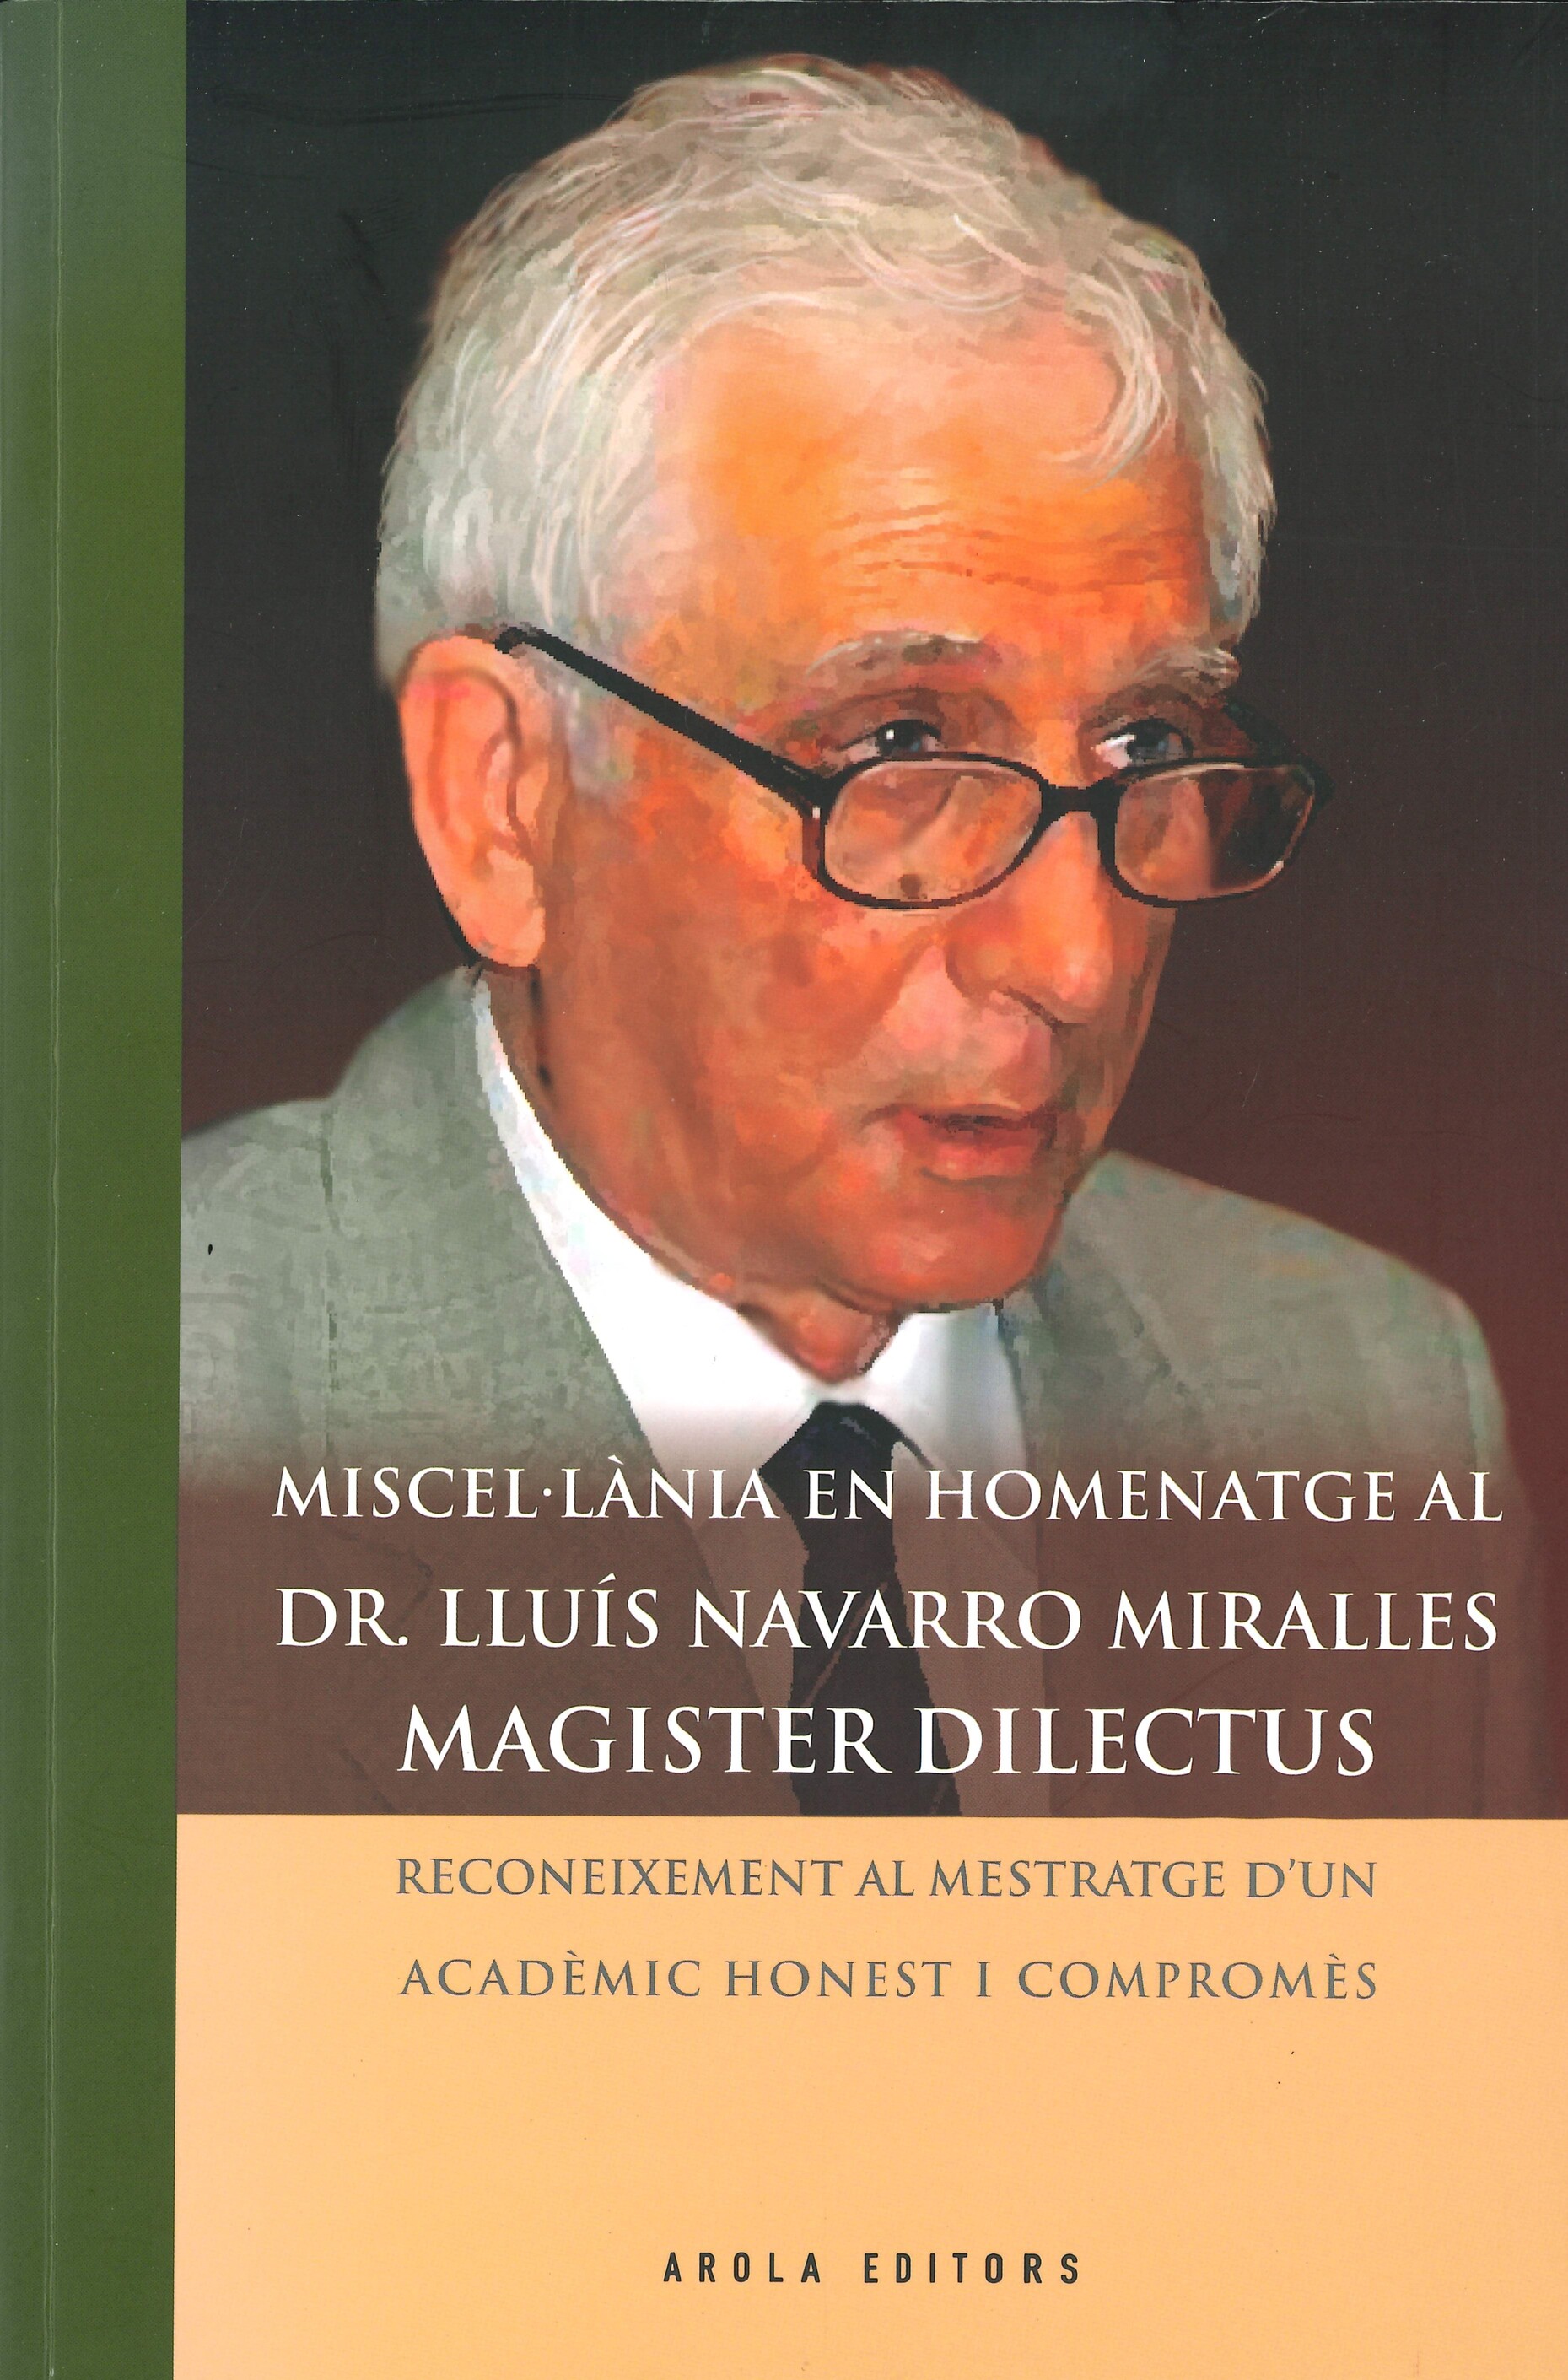 Imagen de portada del libro Miscel·lània en homenatge al Dr. Lluís Navarro Miralles. Magister dilectus